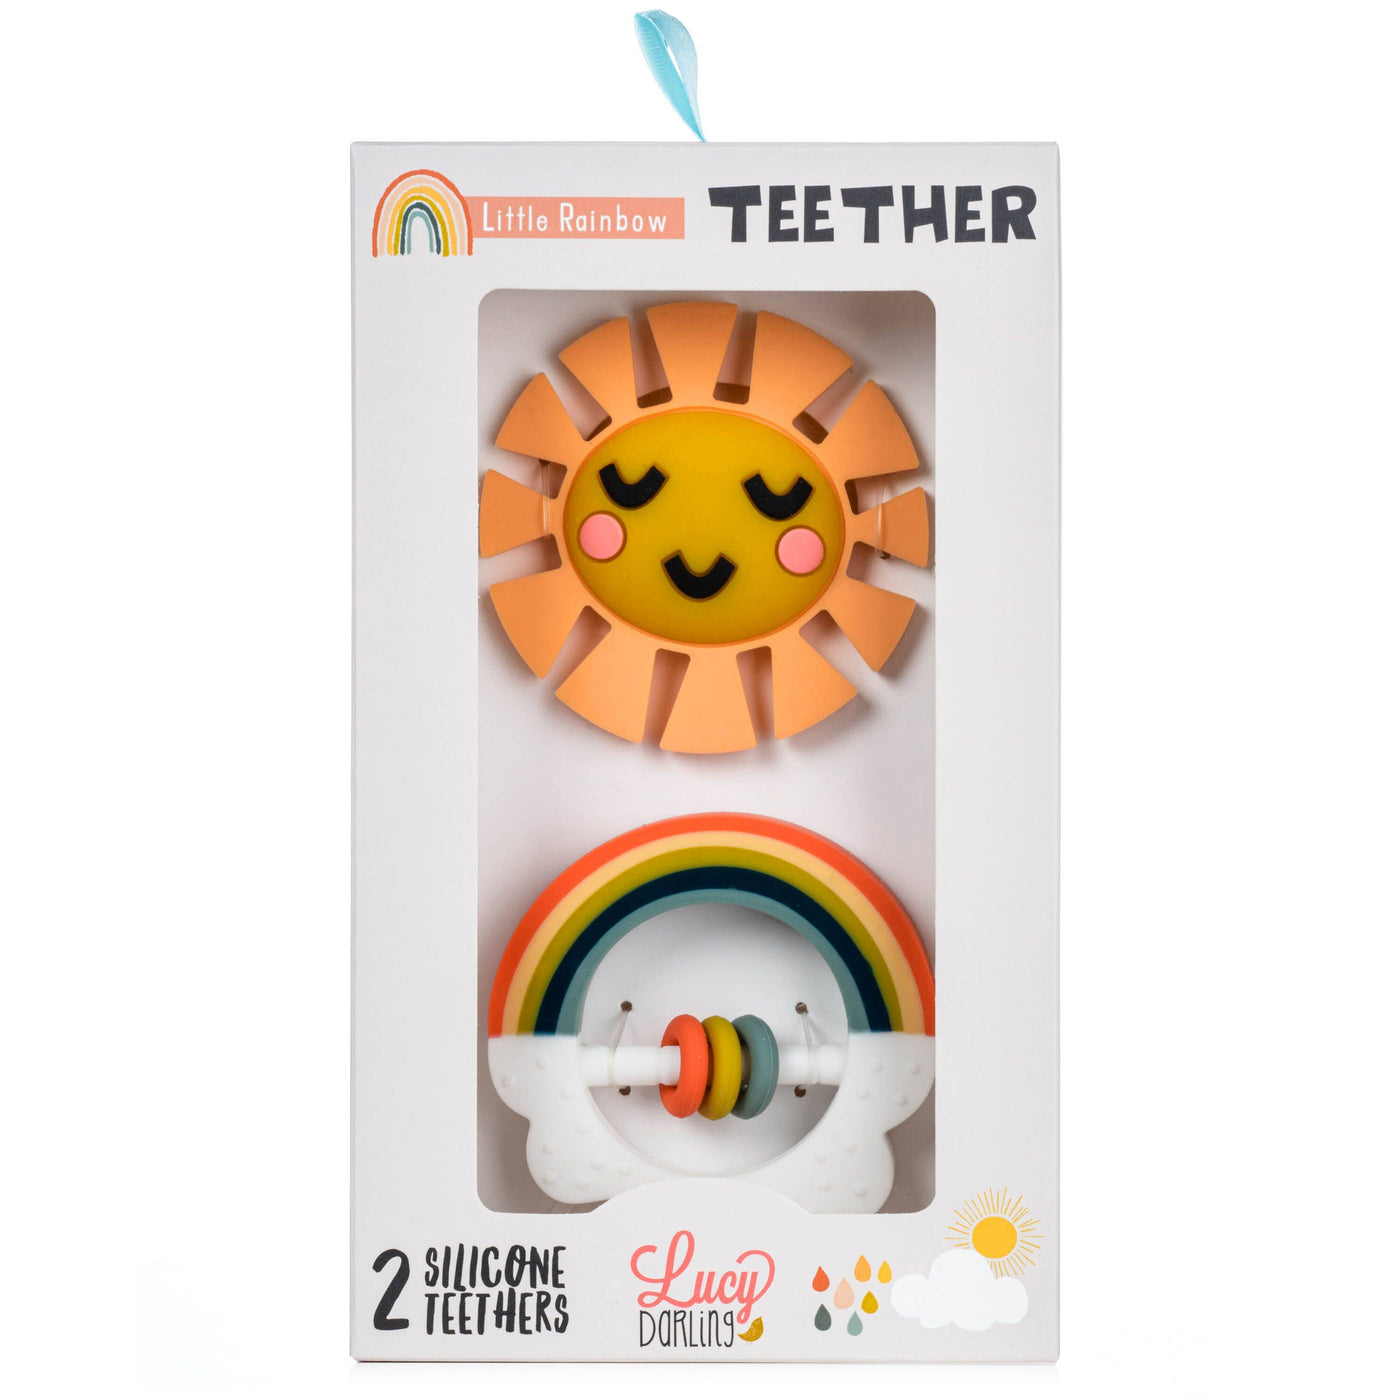 Little Rainbow Teether